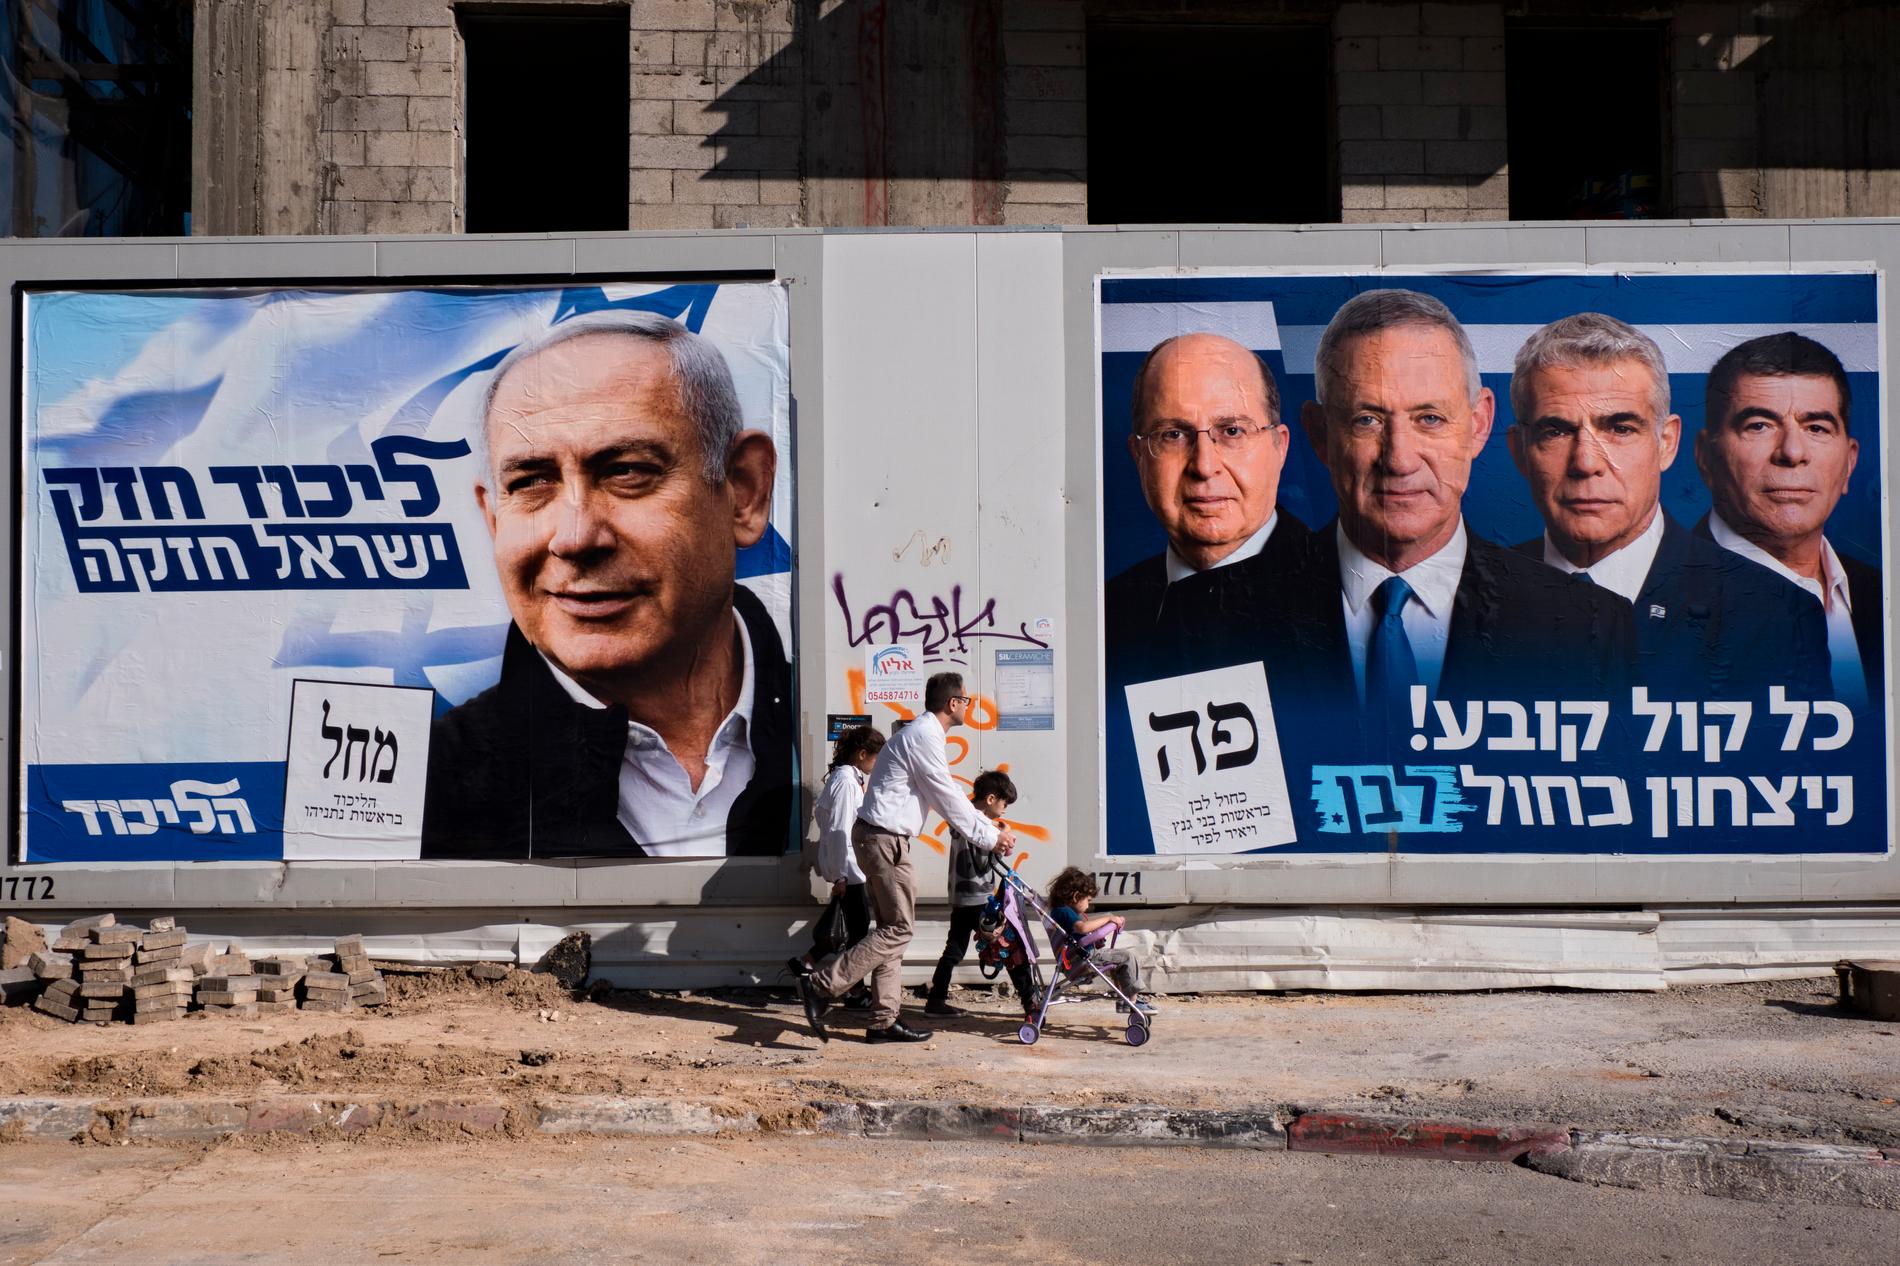 Valaffisher i Tel Aviv i Israel. Den vänstra visar Likudledaren och sittande premiärministern Benjamin Netanyahu. Den högra visar Benny Gantz och några andra politiker från den nya mittenorienterade Blå och vit-alliansen.